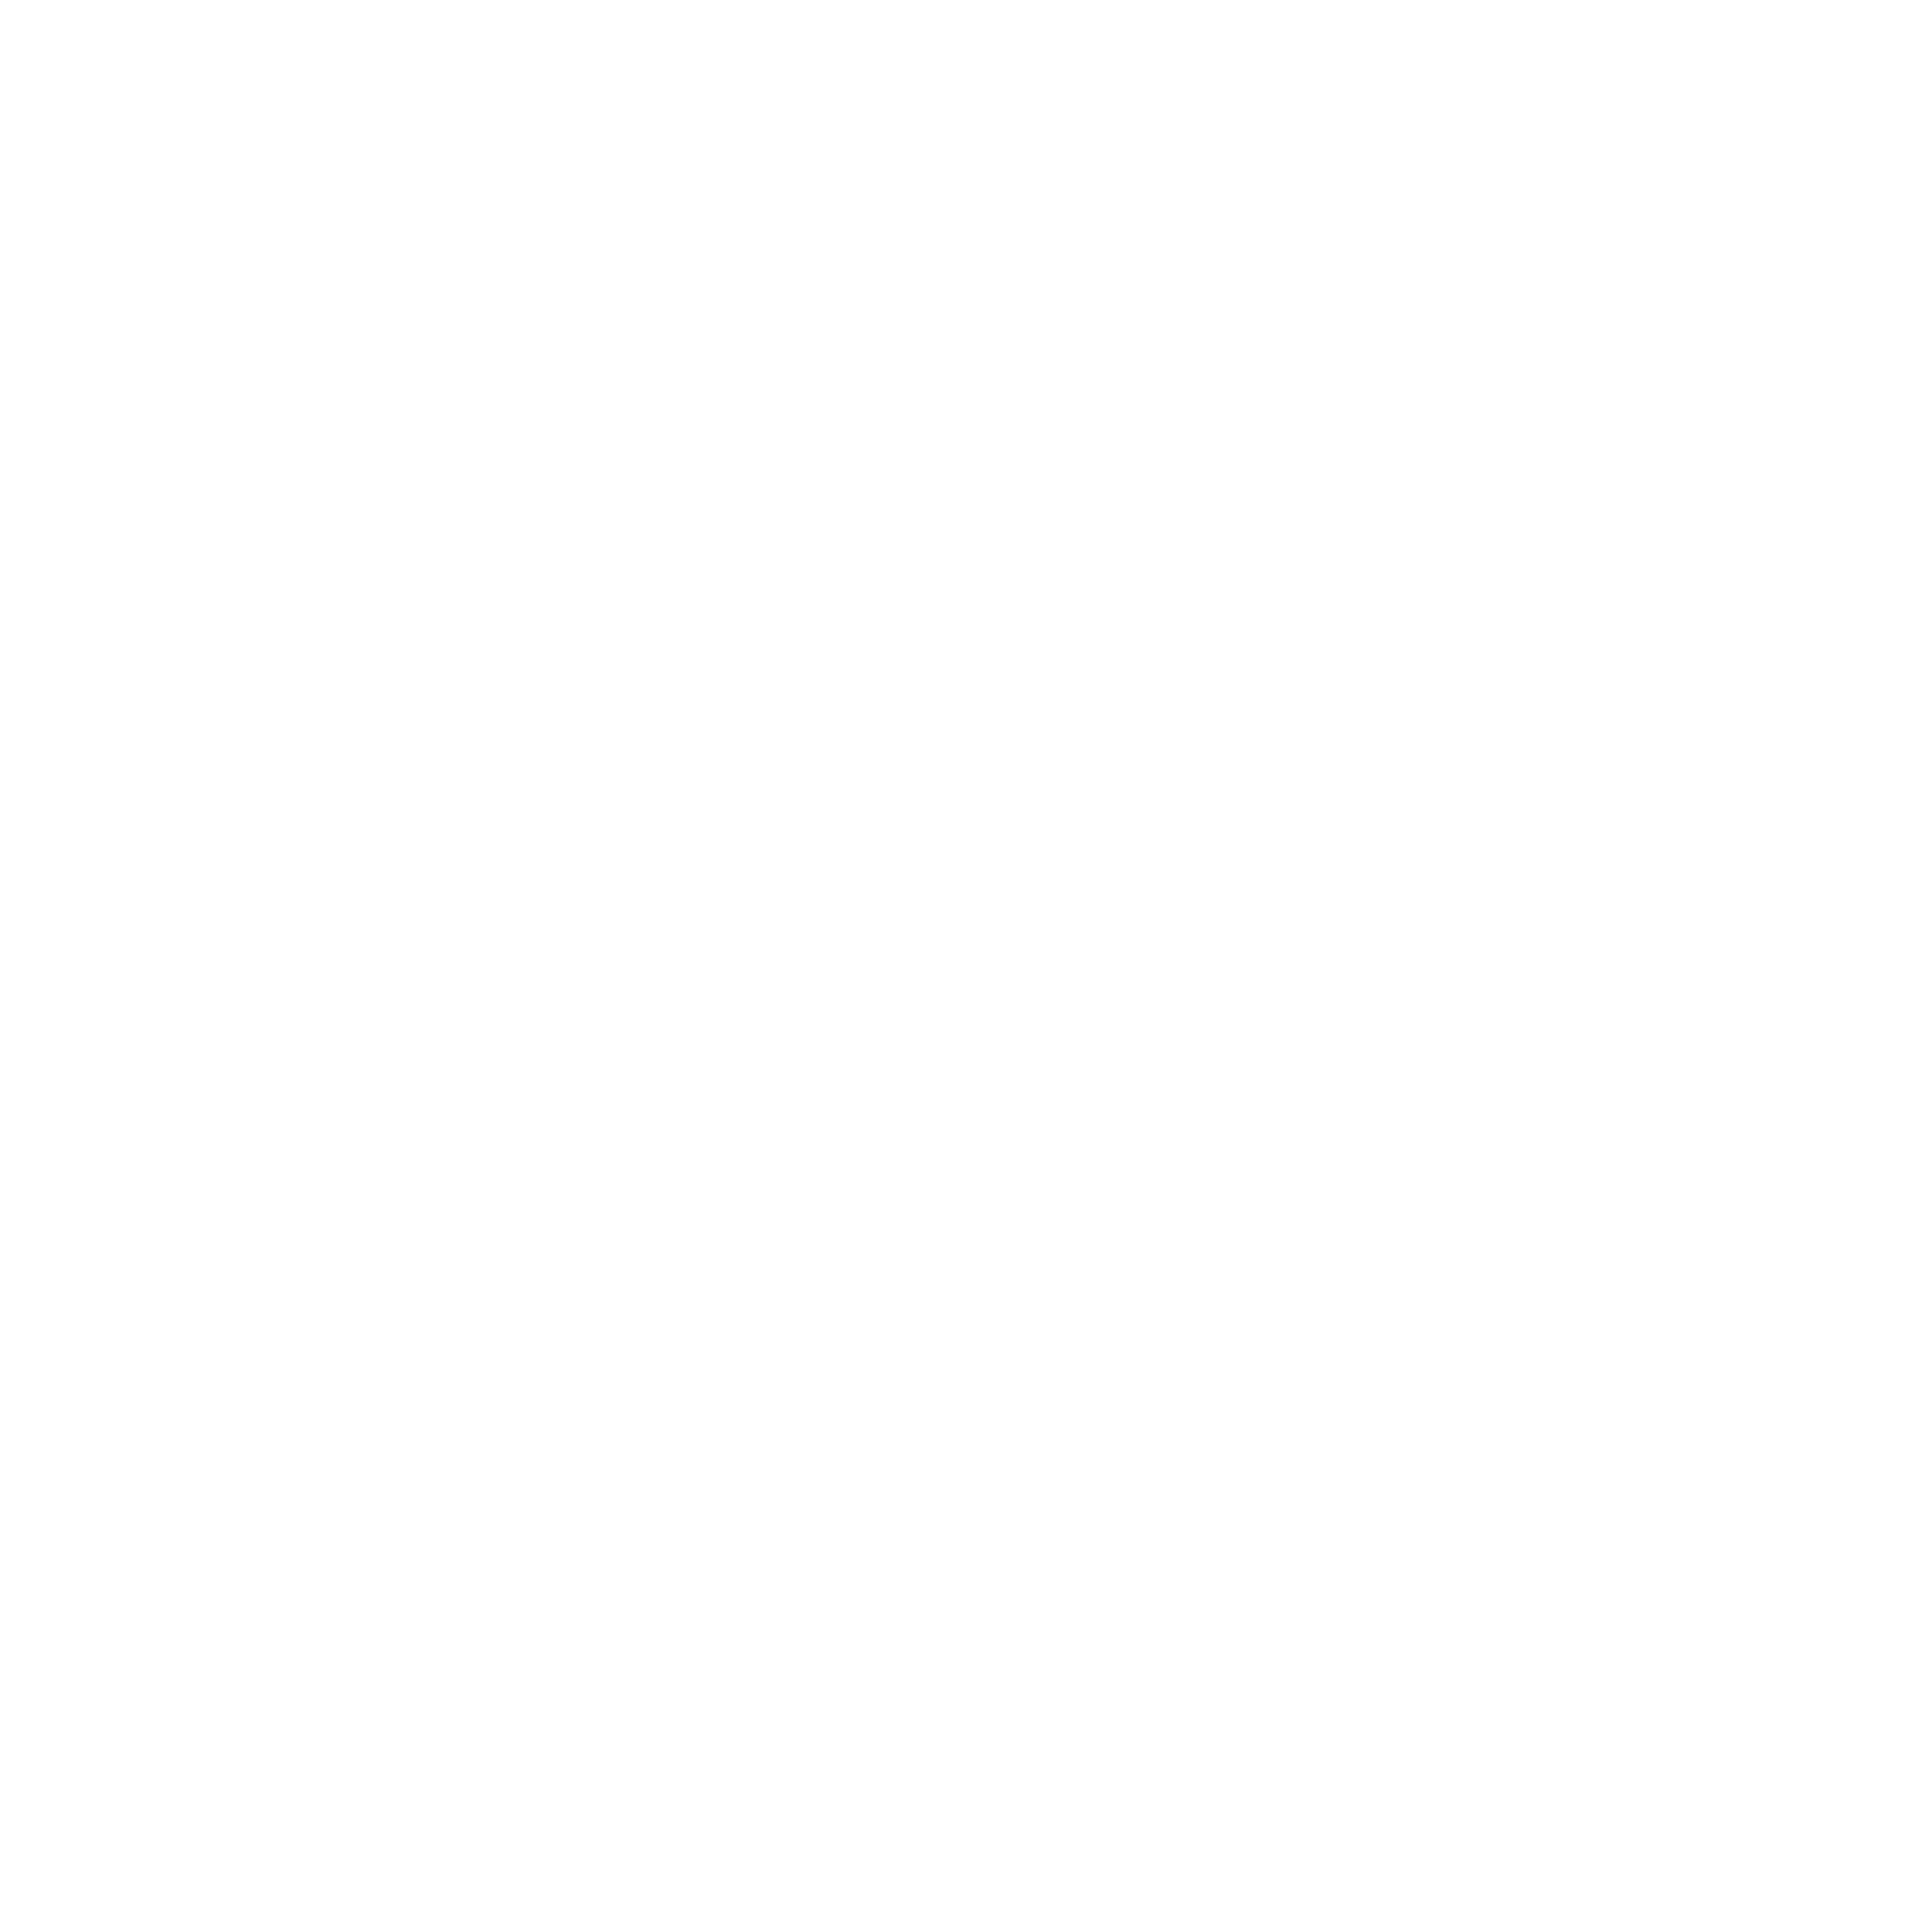 Balmain Transparent Logo - Balmain Logo PNG Transparent & SVG Vector - Freebie Supply